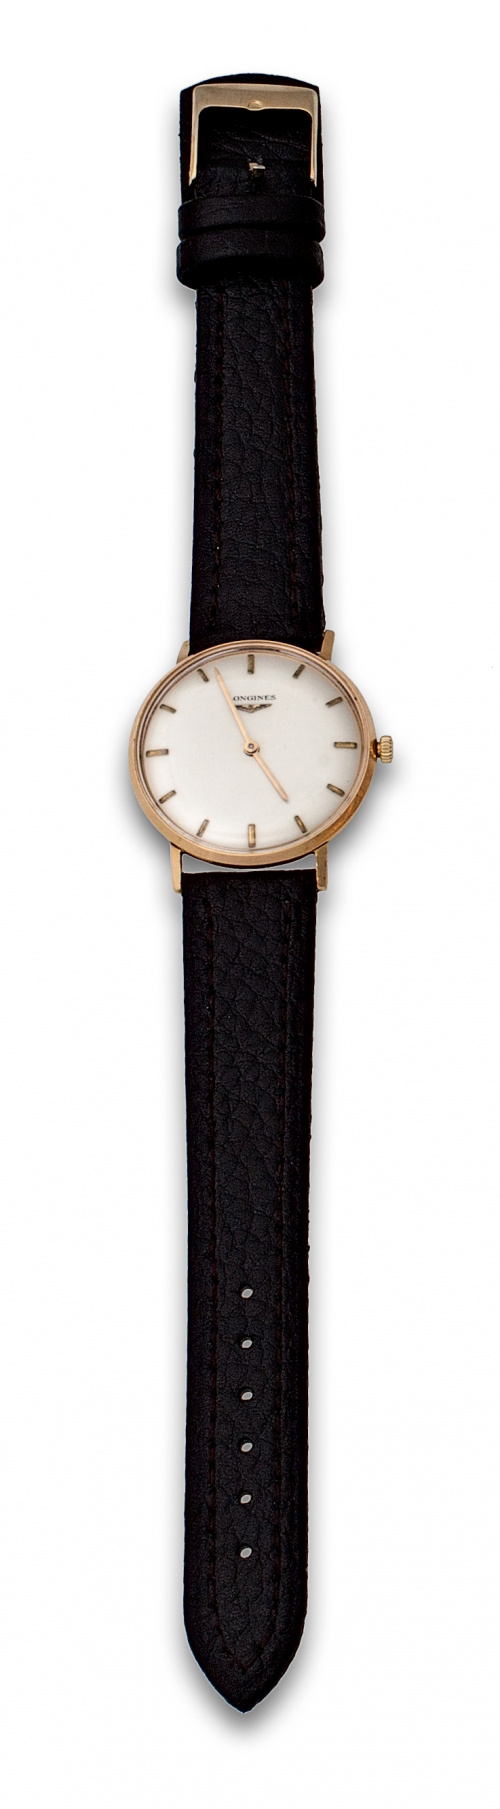 Reloj de pulsera LONGINES en oro de 18K años 60.